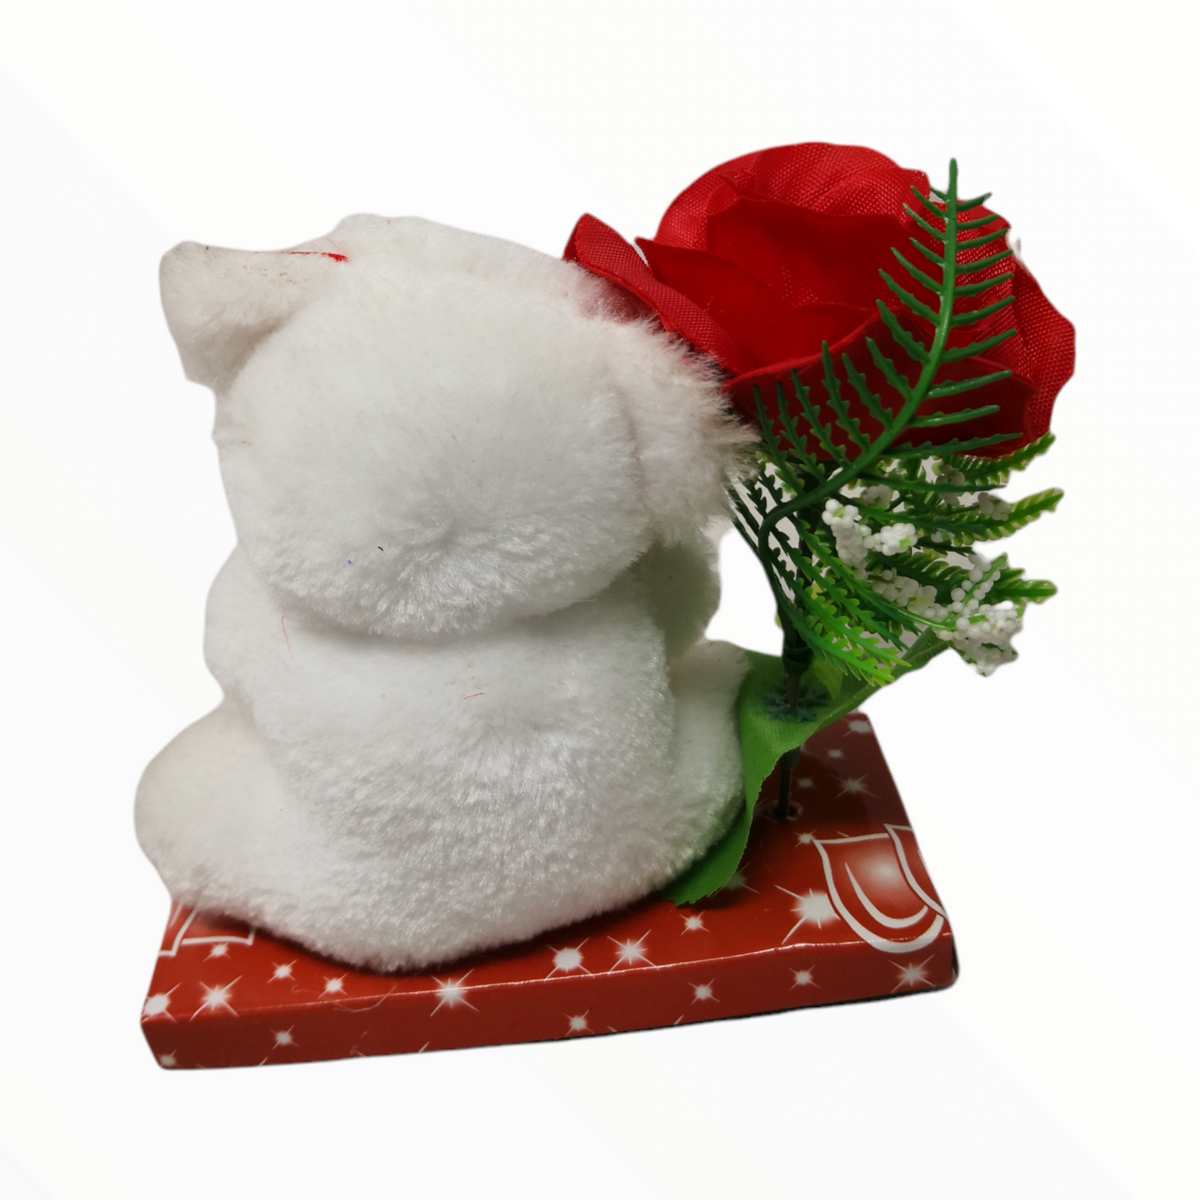 Relaxdays Oso de Rosas, con Corazón, San Valentín Regalos Mujer Originales,  Caja, 300 Flores Espuma Suave, Rojo y Blanco